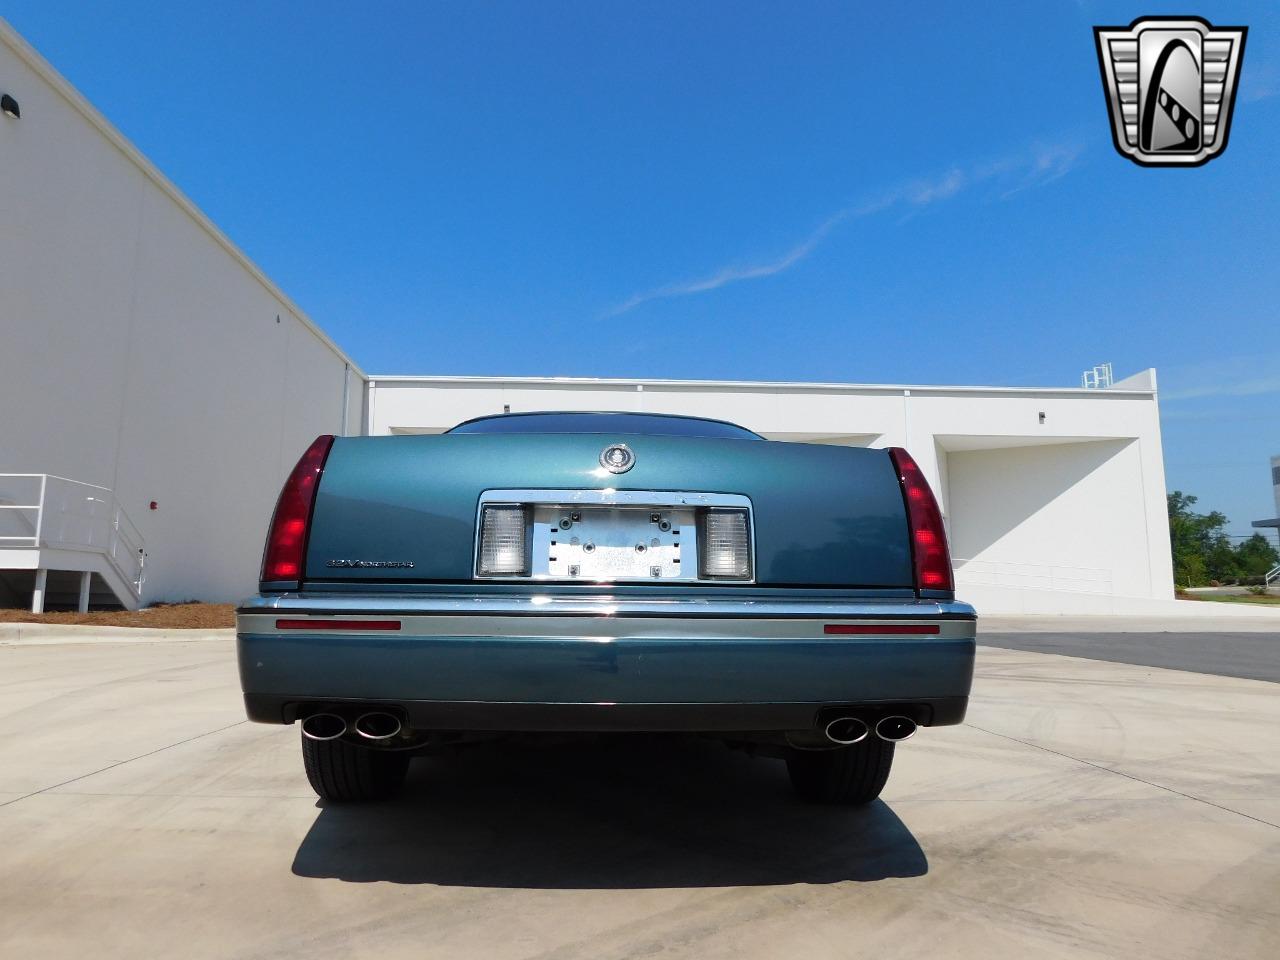 1993 Cadillac Eldorado